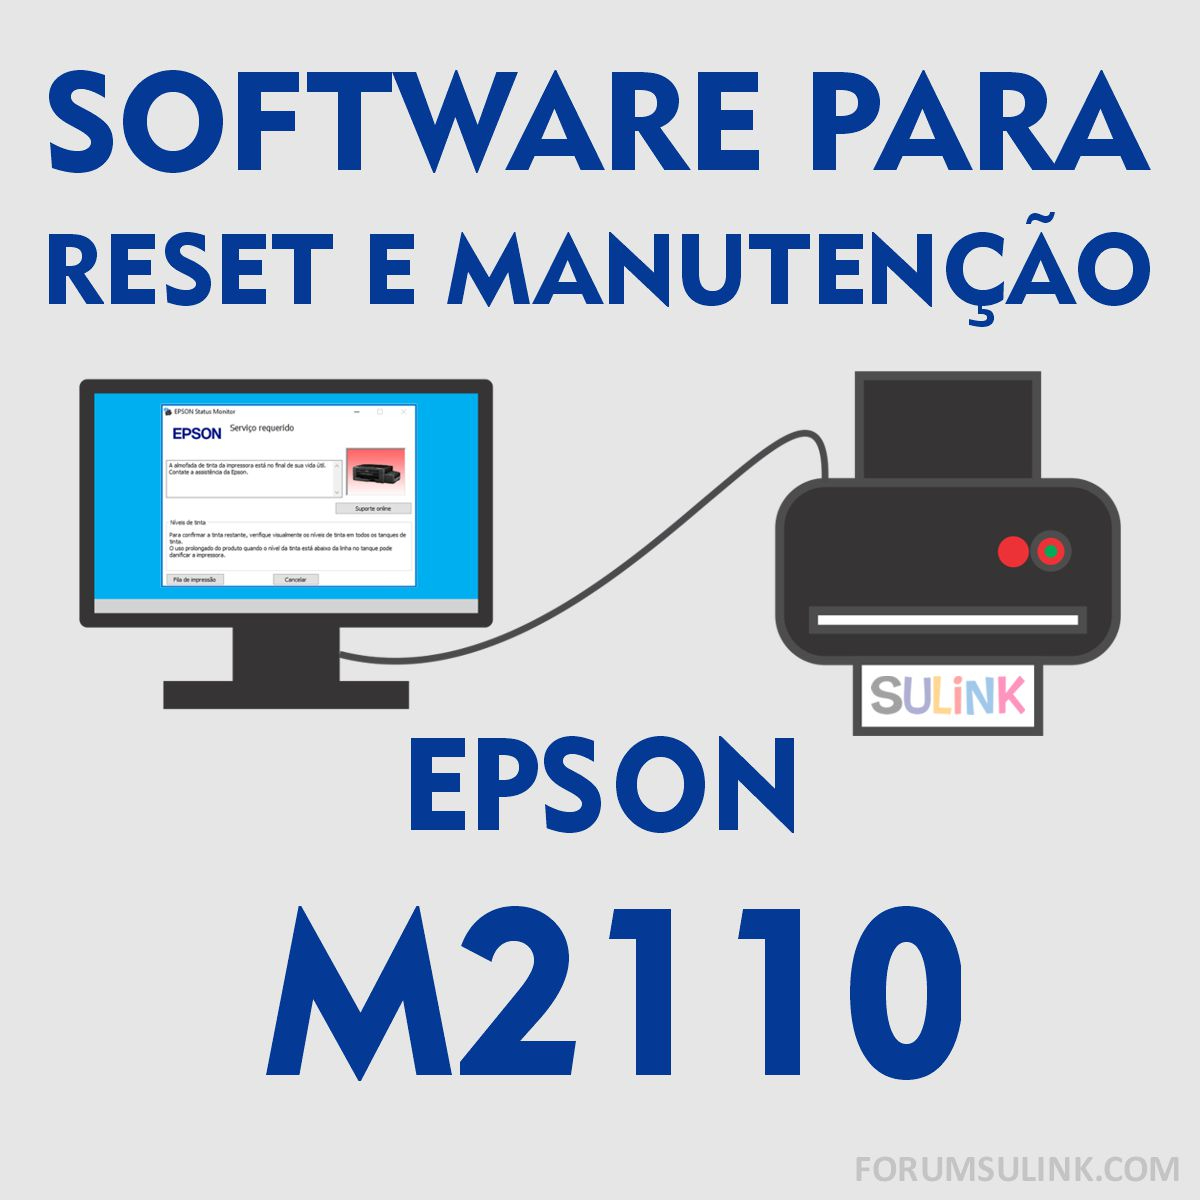 Epson M2110 | Software para Reset das Almofadas e Manutenção